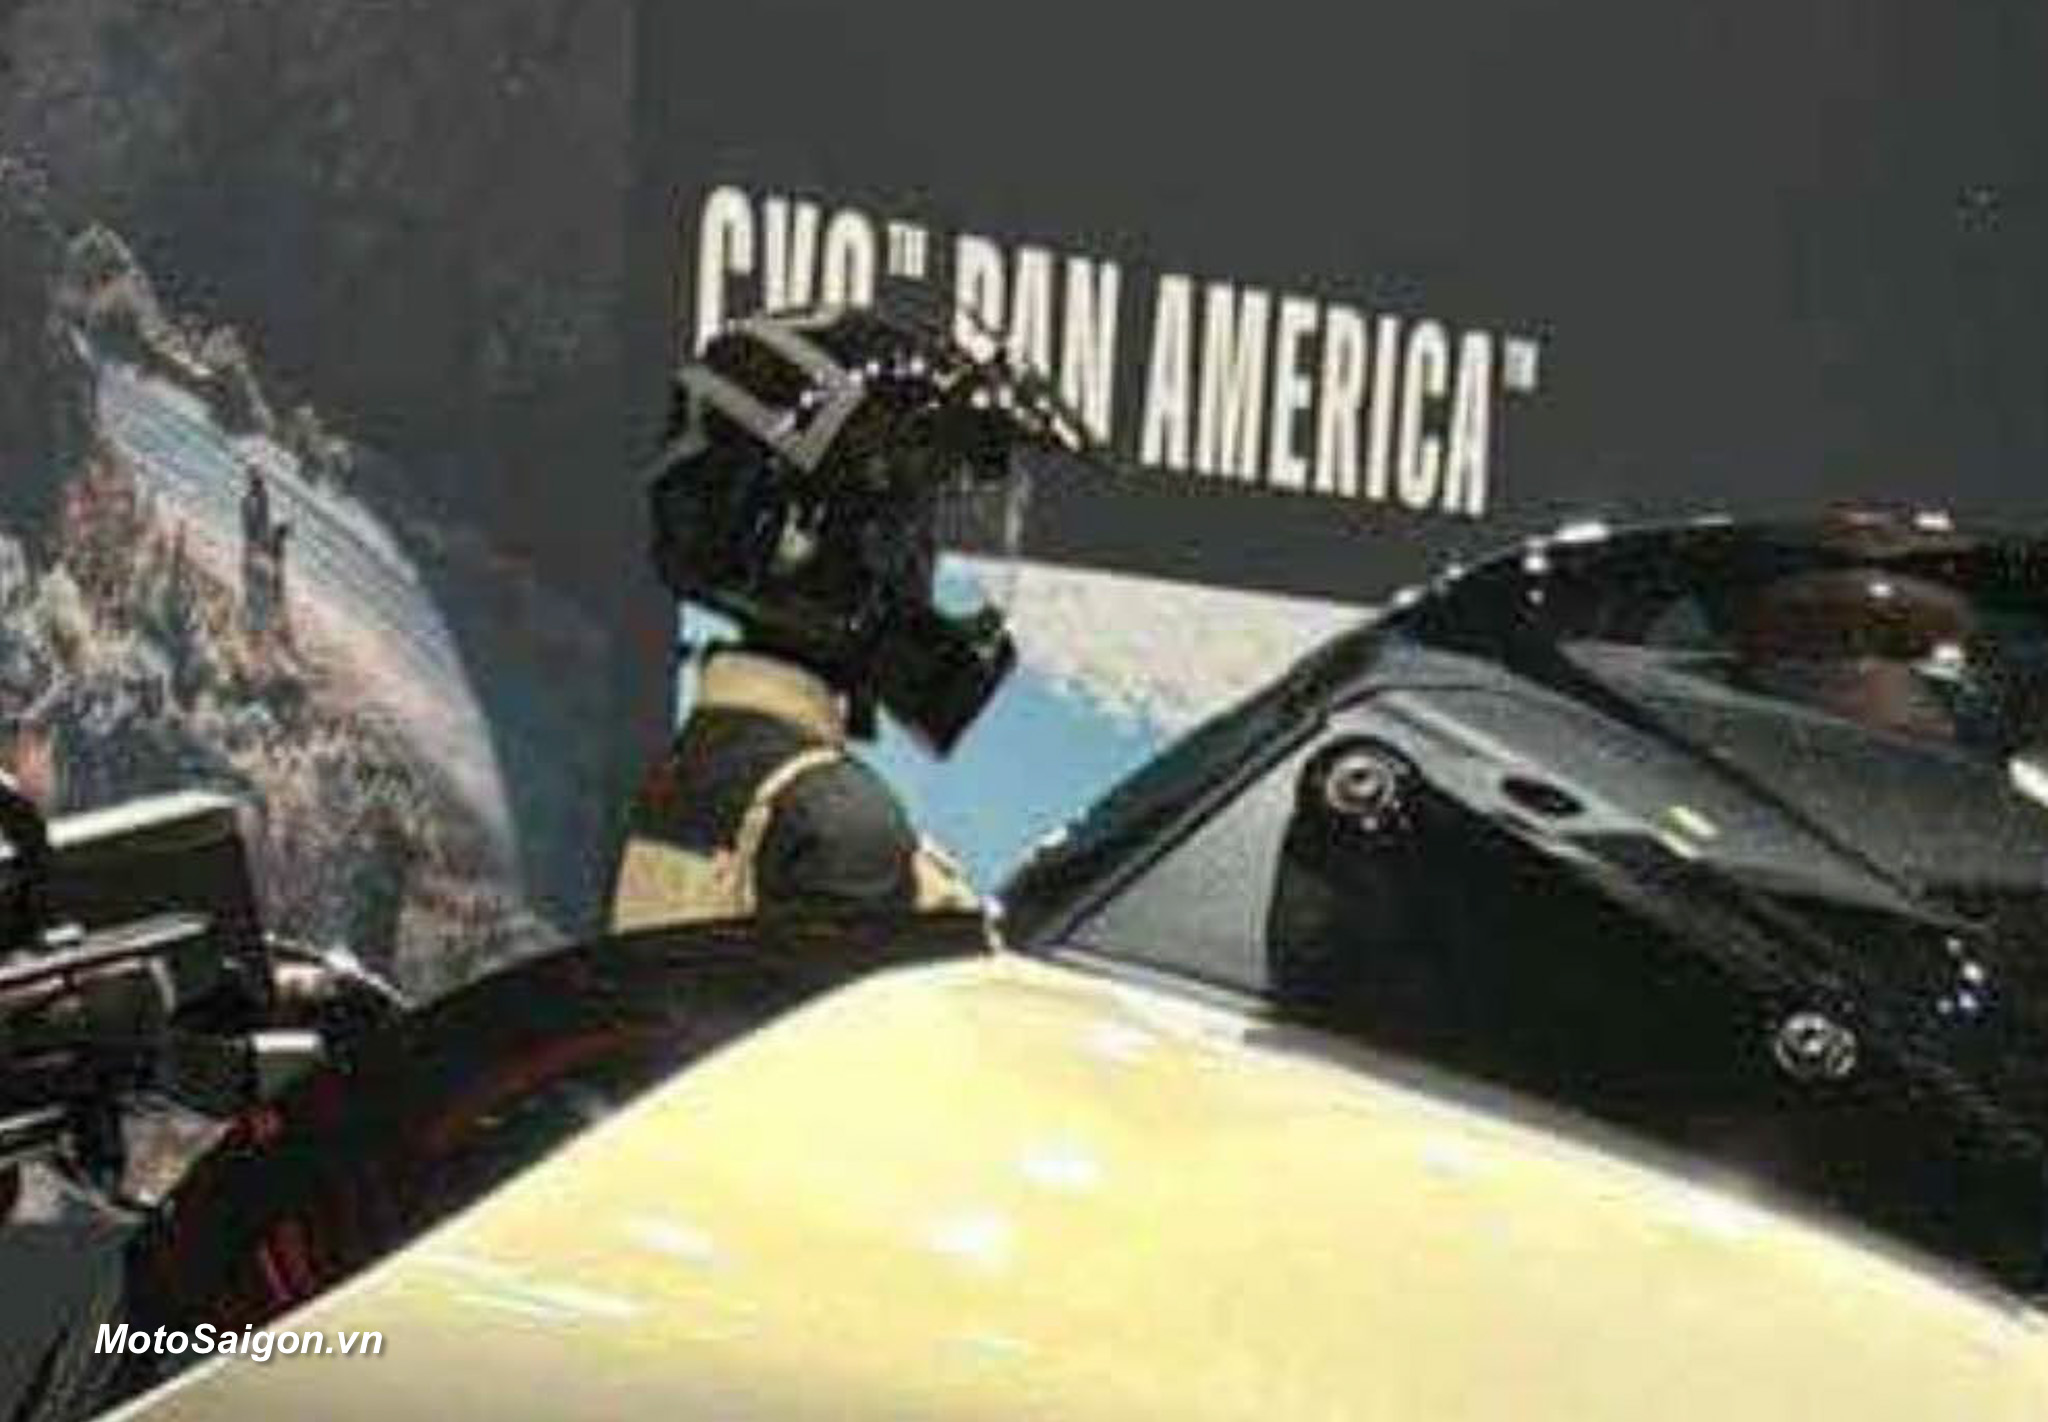 CVO Pan America chiến binh Adv của Harley-Davidson lộ ảnh thực tế